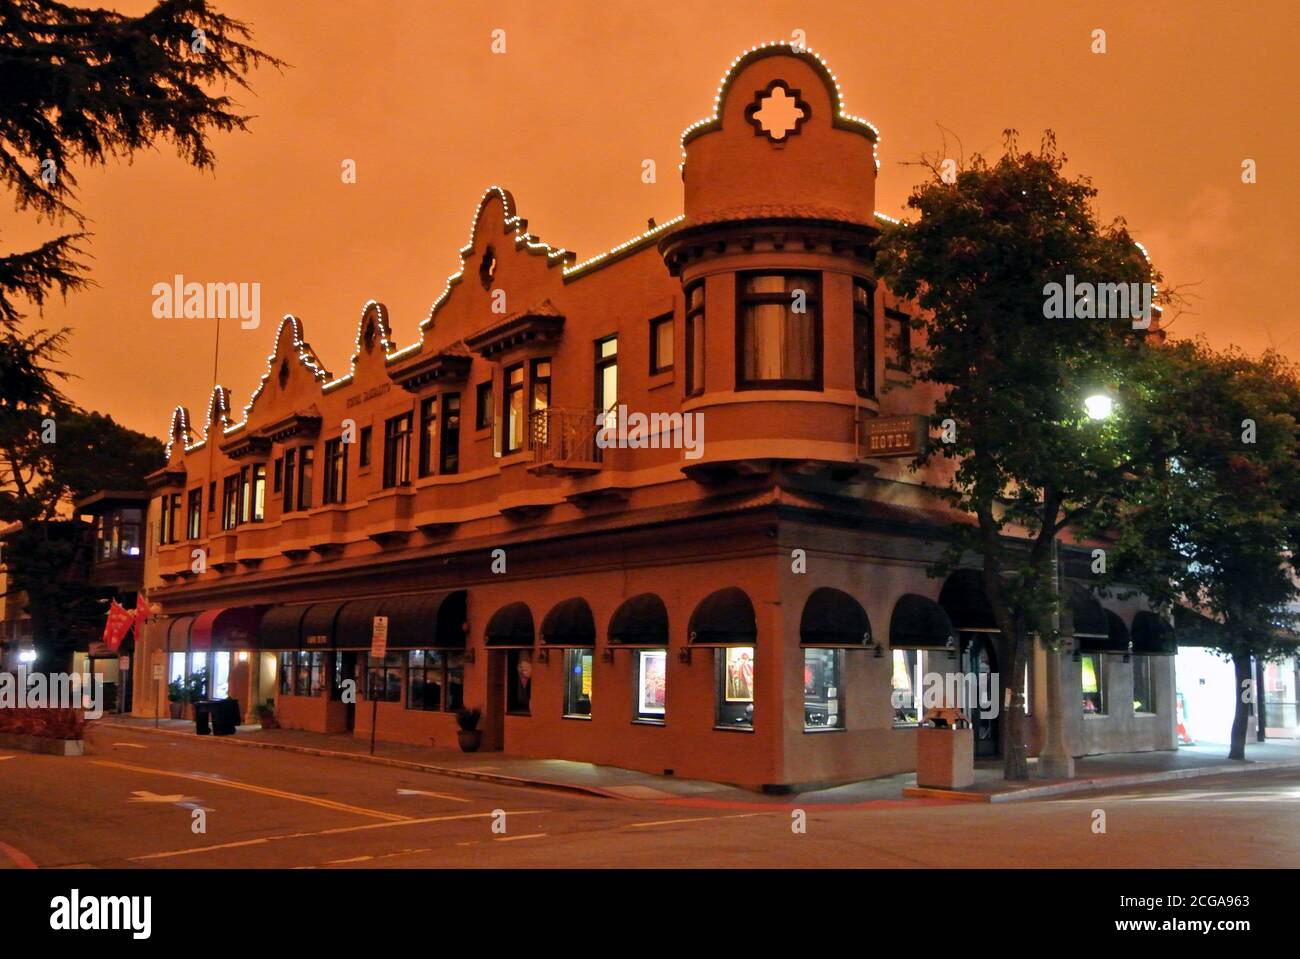 Schwelig dystopischen Himmel im Hintergrund drehen sausalito Himmel Hotel Himmel Tieforange Farbe Stockfoto